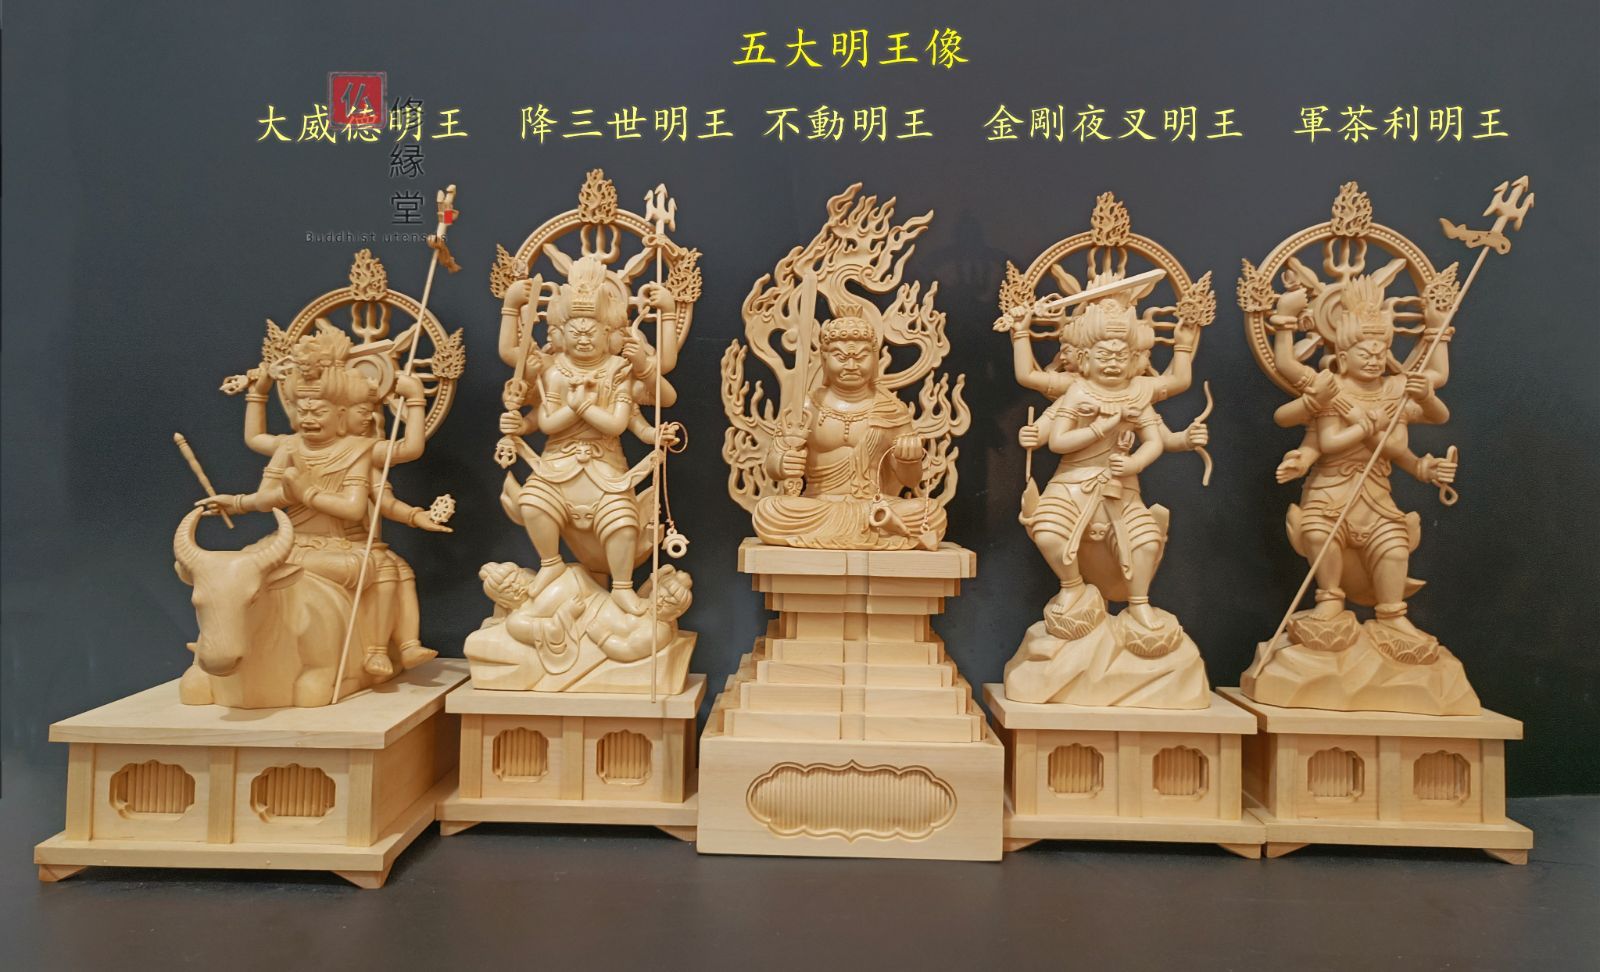 【修縁堂】最高級 木彫仏像 五大明王像一式 彫刻 一刀彫 天然木檜材 仏教工芸